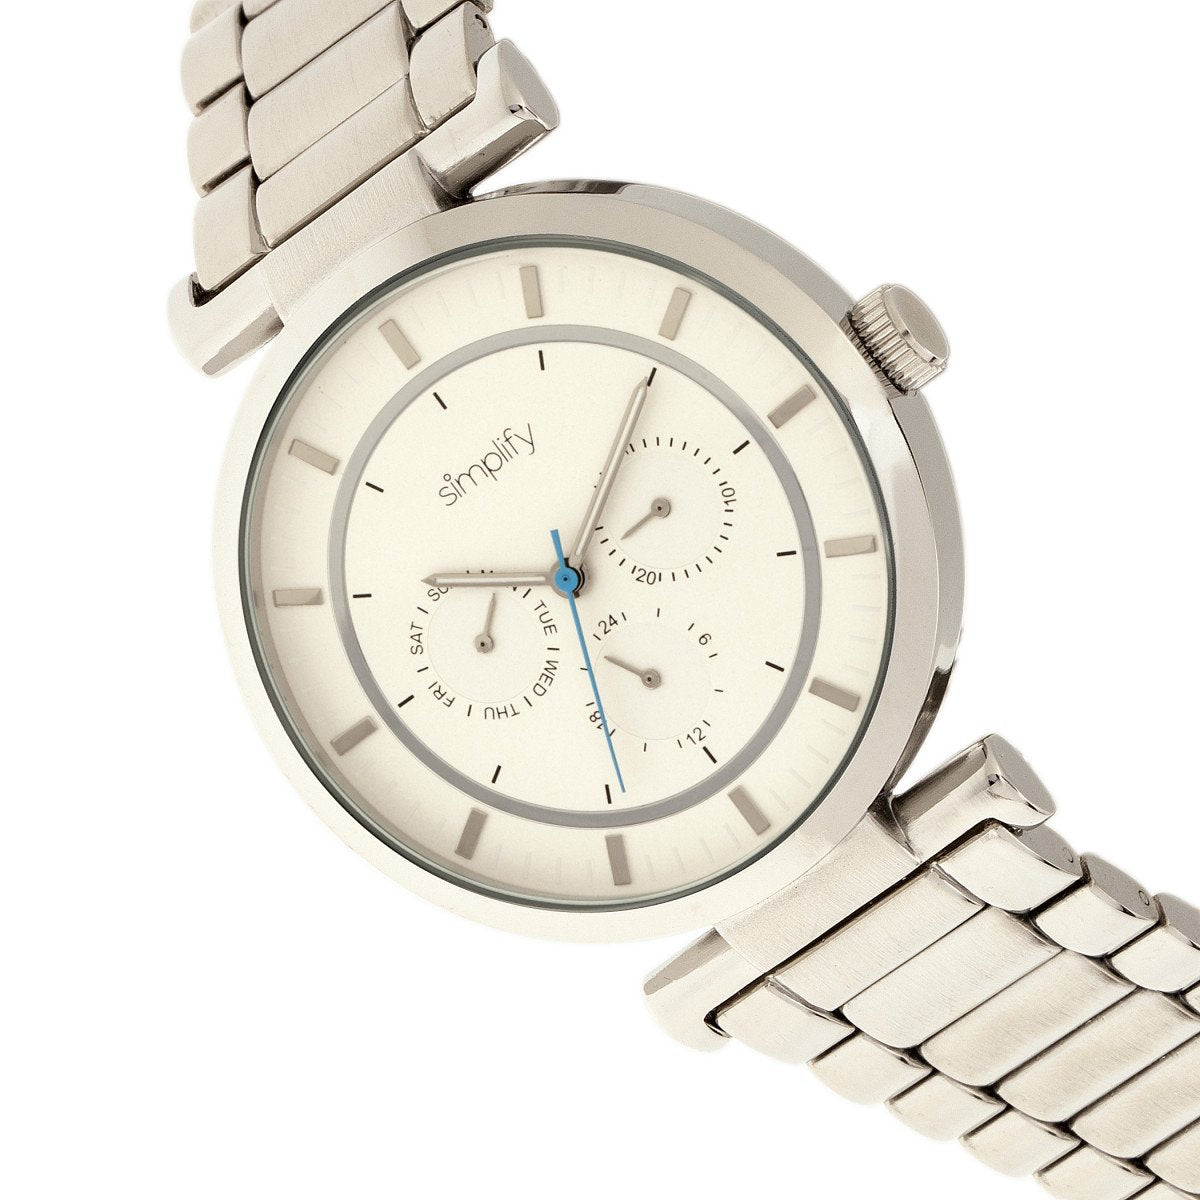 Simplify The 4800 Bracelet Watch w/Day/Date - Silver/White - SIM4801